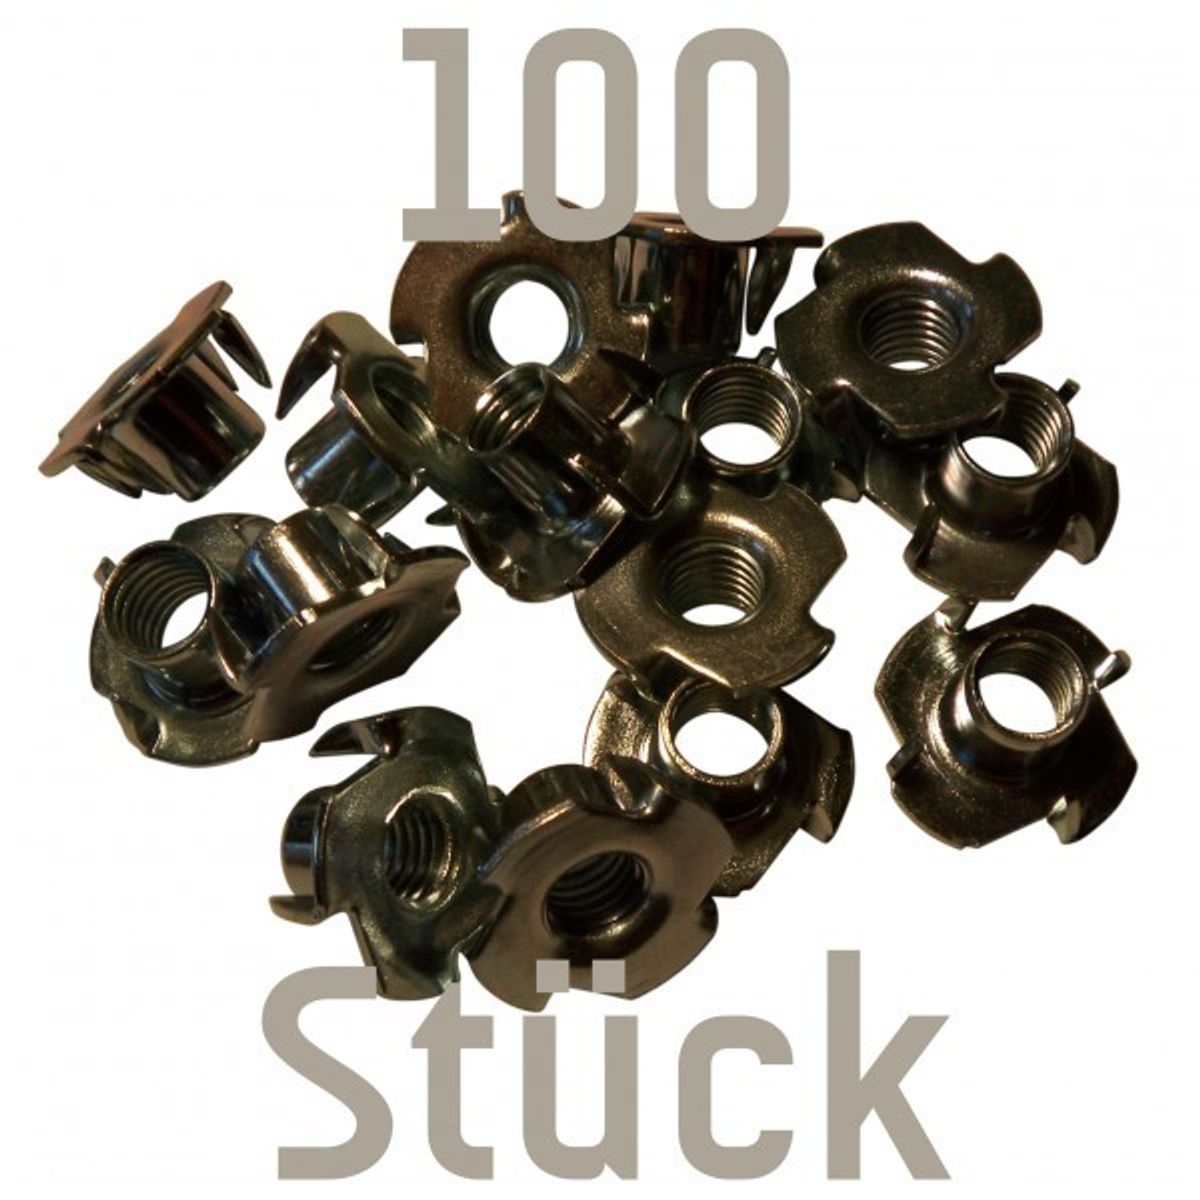 100 Einschlagmuttern M10 für Klettergriffe von Kletterbude